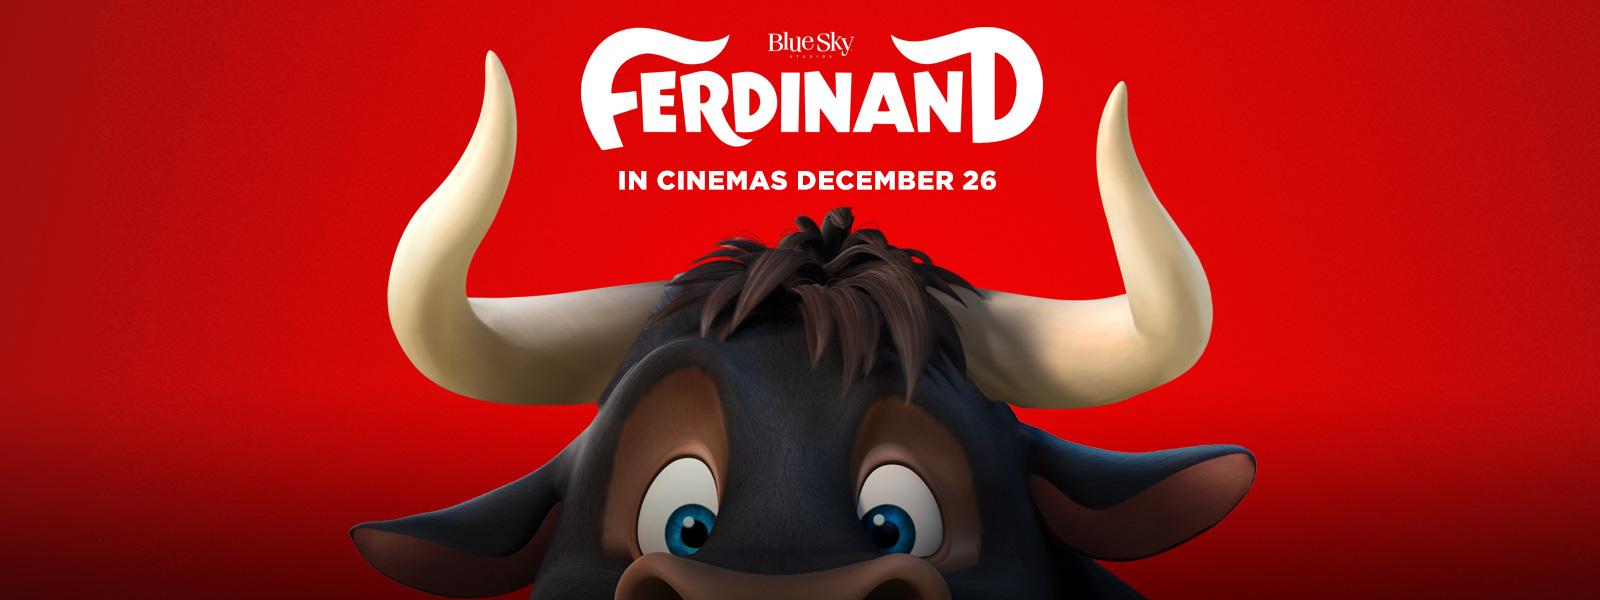 بوستر فيلم Ferdinand